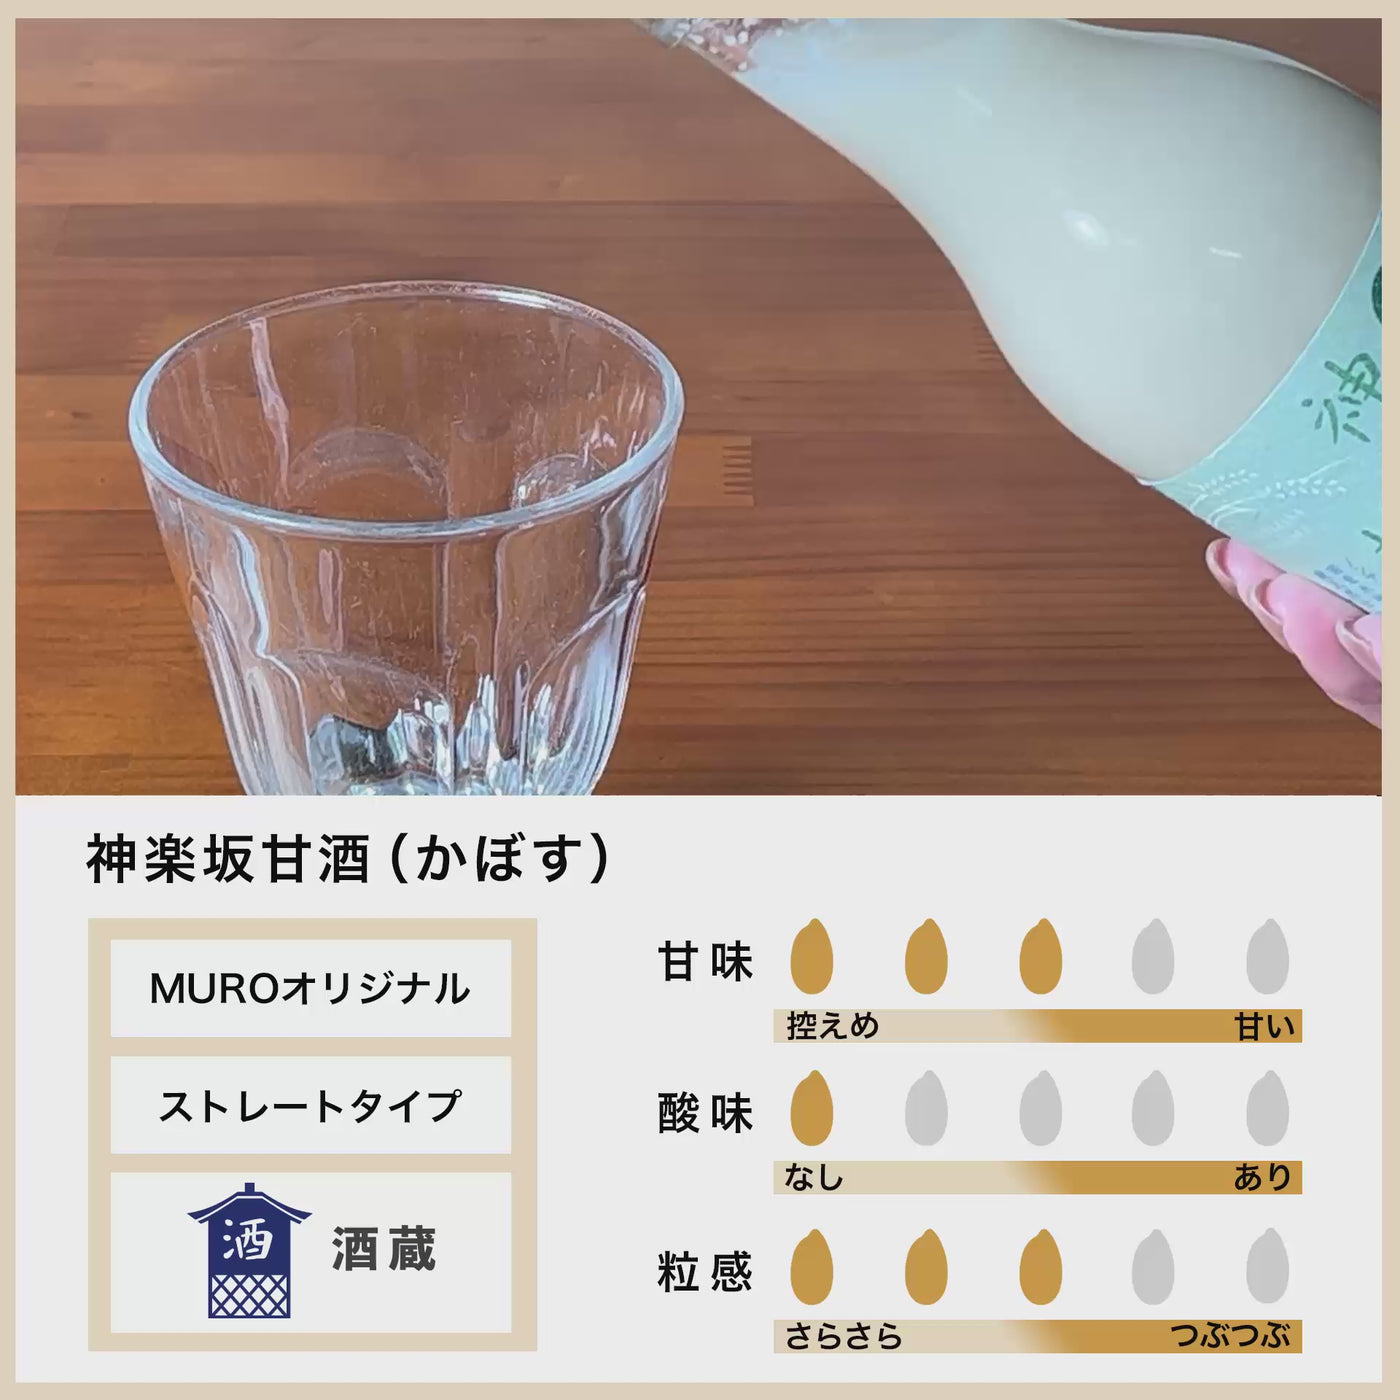 [Großkauf] Kagurazaka Amazake Kabosu 500 ml x 6 Flaschen-Set